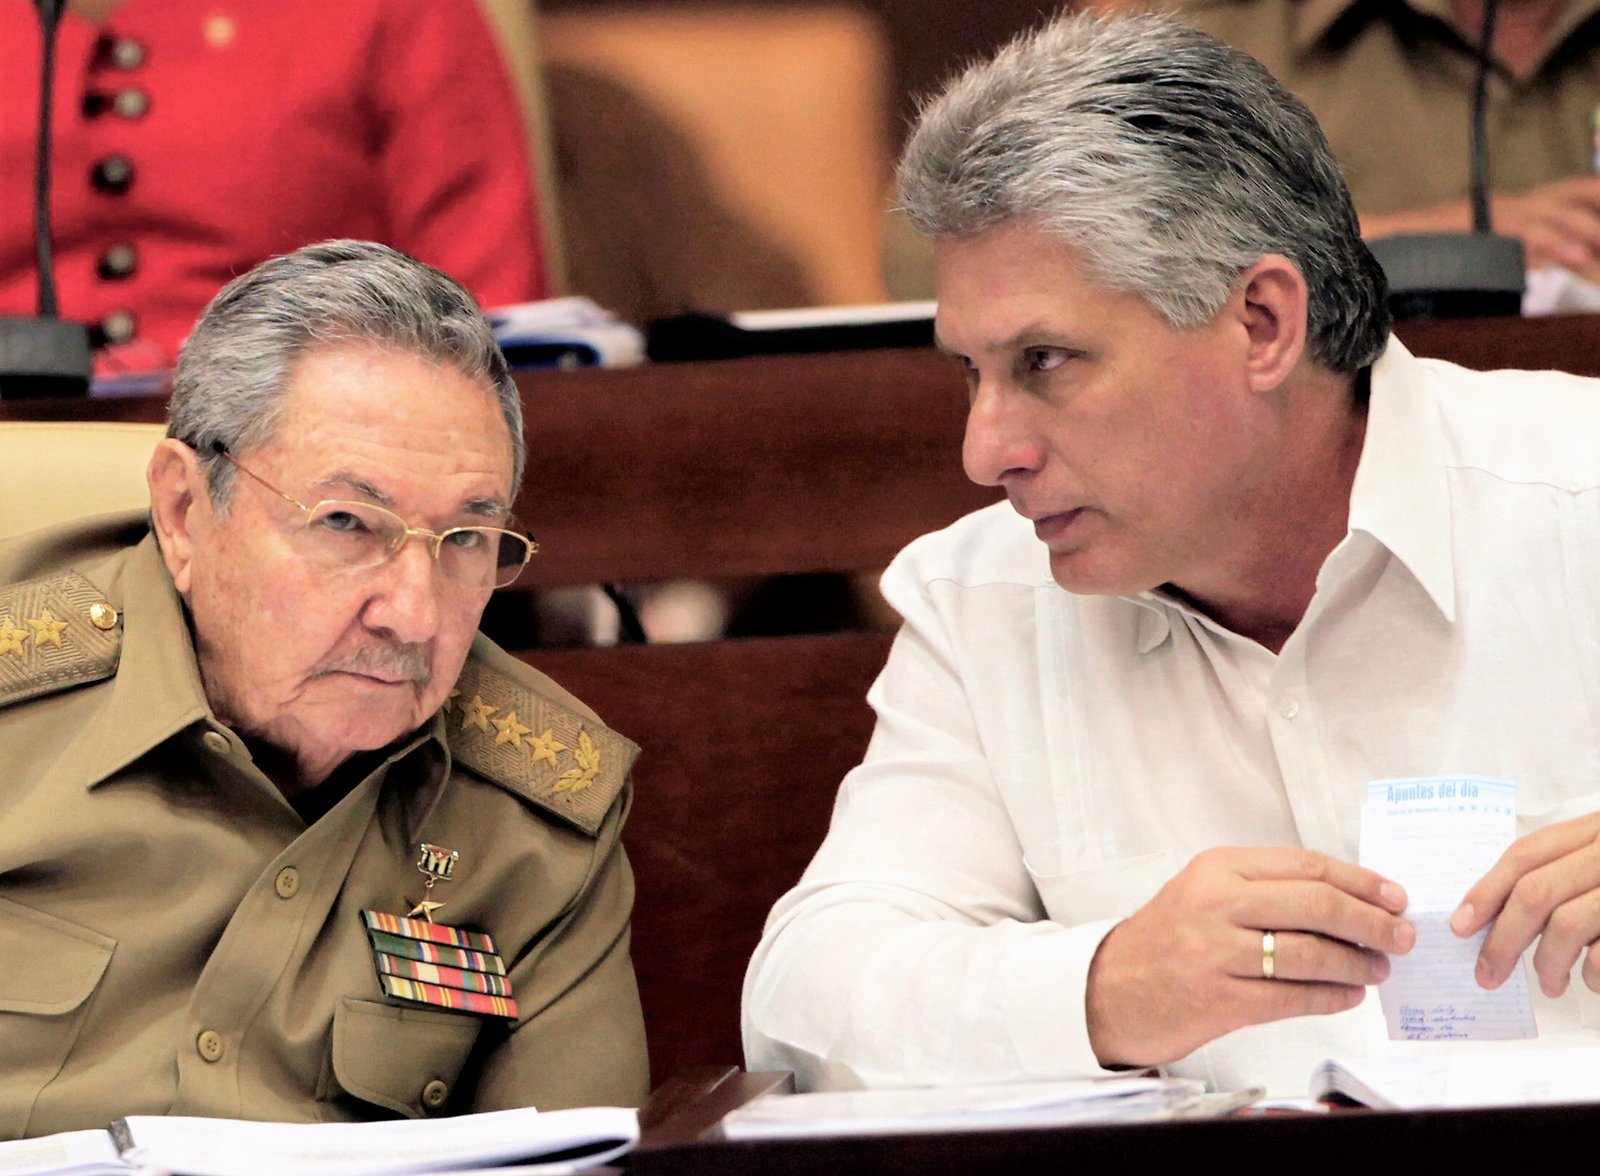 El miércoles Cuba nombrará sucesor de Raúl Castro al frente del gobierno